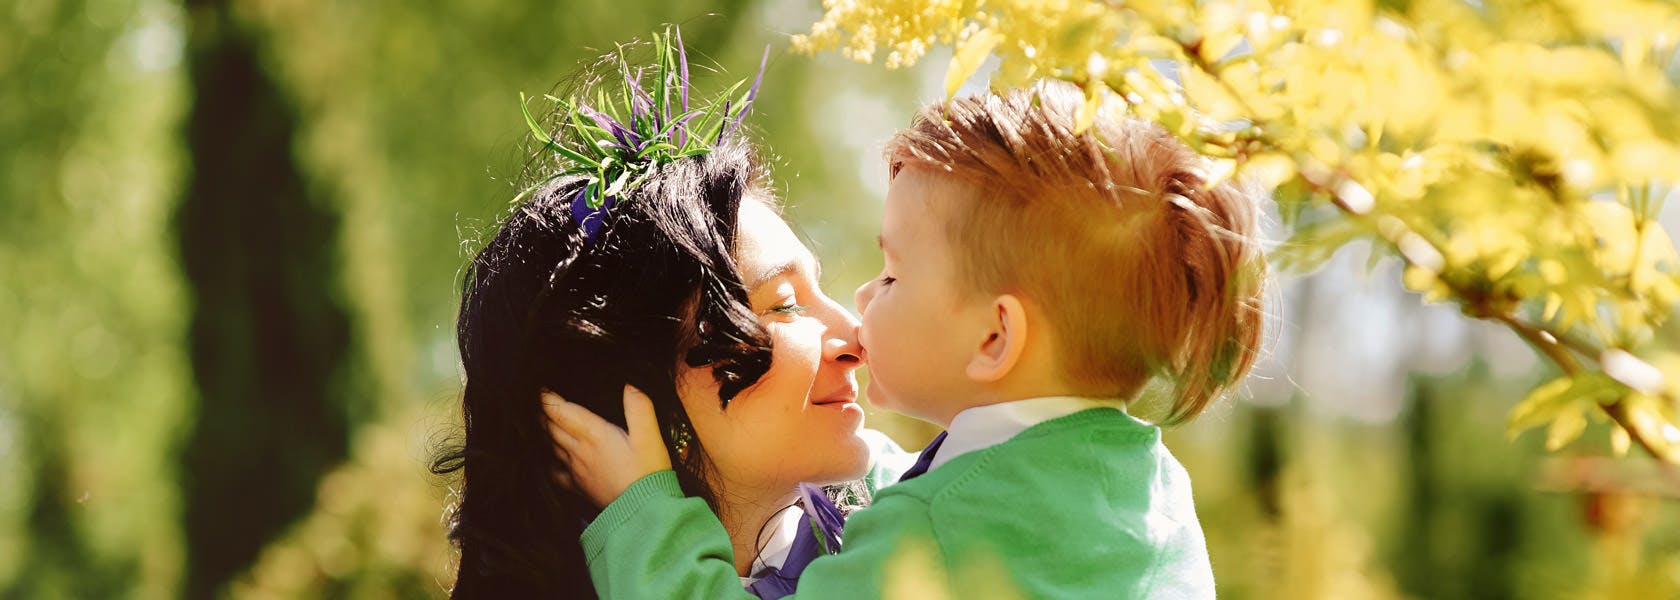 Madre e hijo al aire libre, el niño le esta dando un beso a la mamá en la nariz.